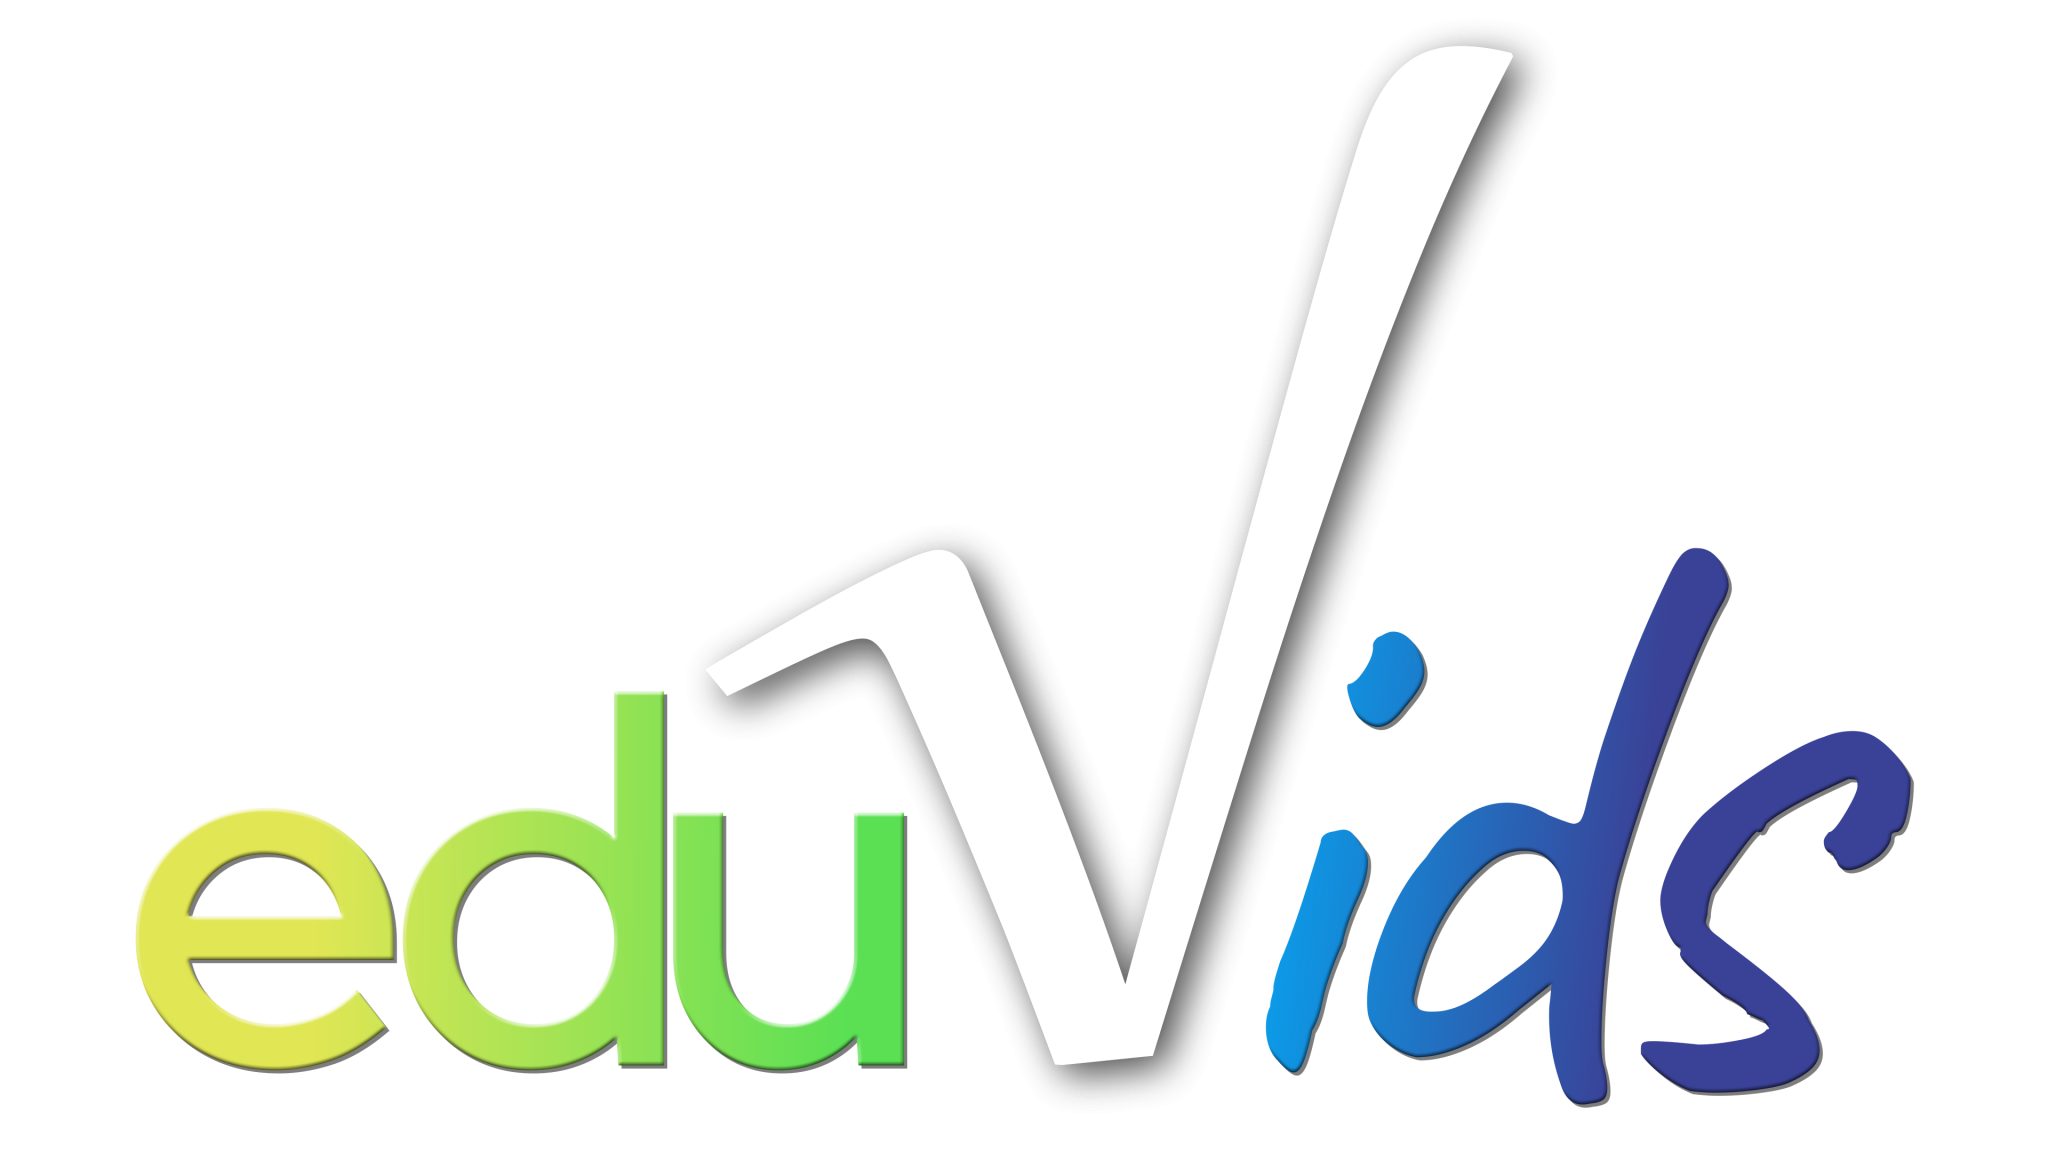 Eduvids logo